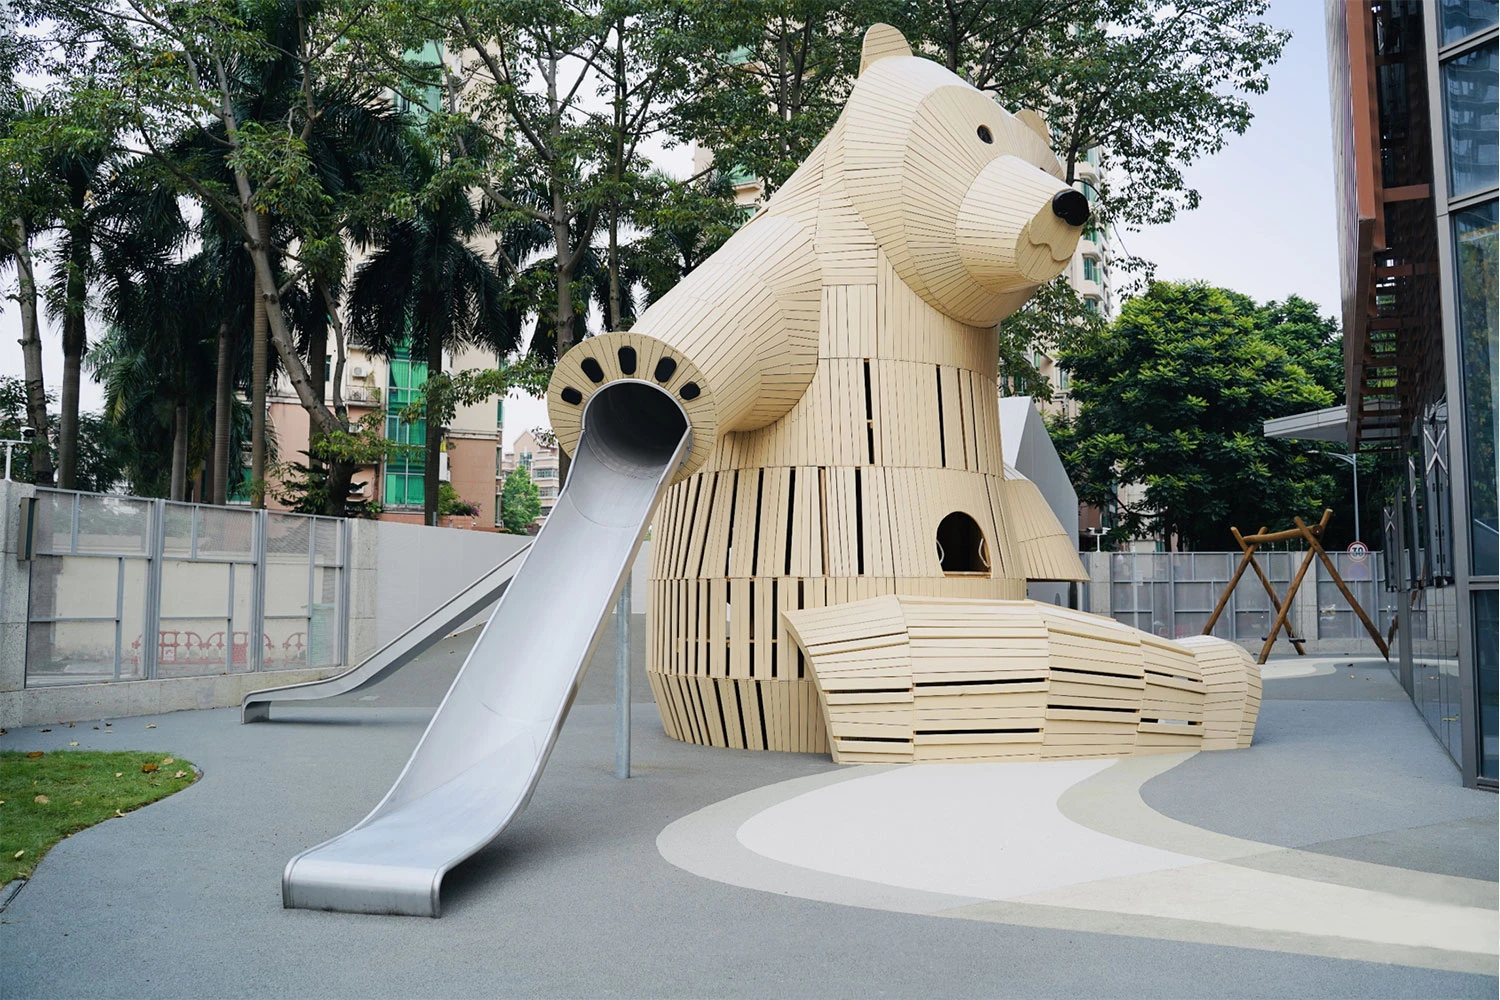 Spielplatzskulptur aus Holz in Form eines grossen Bären im Kindergarten in China